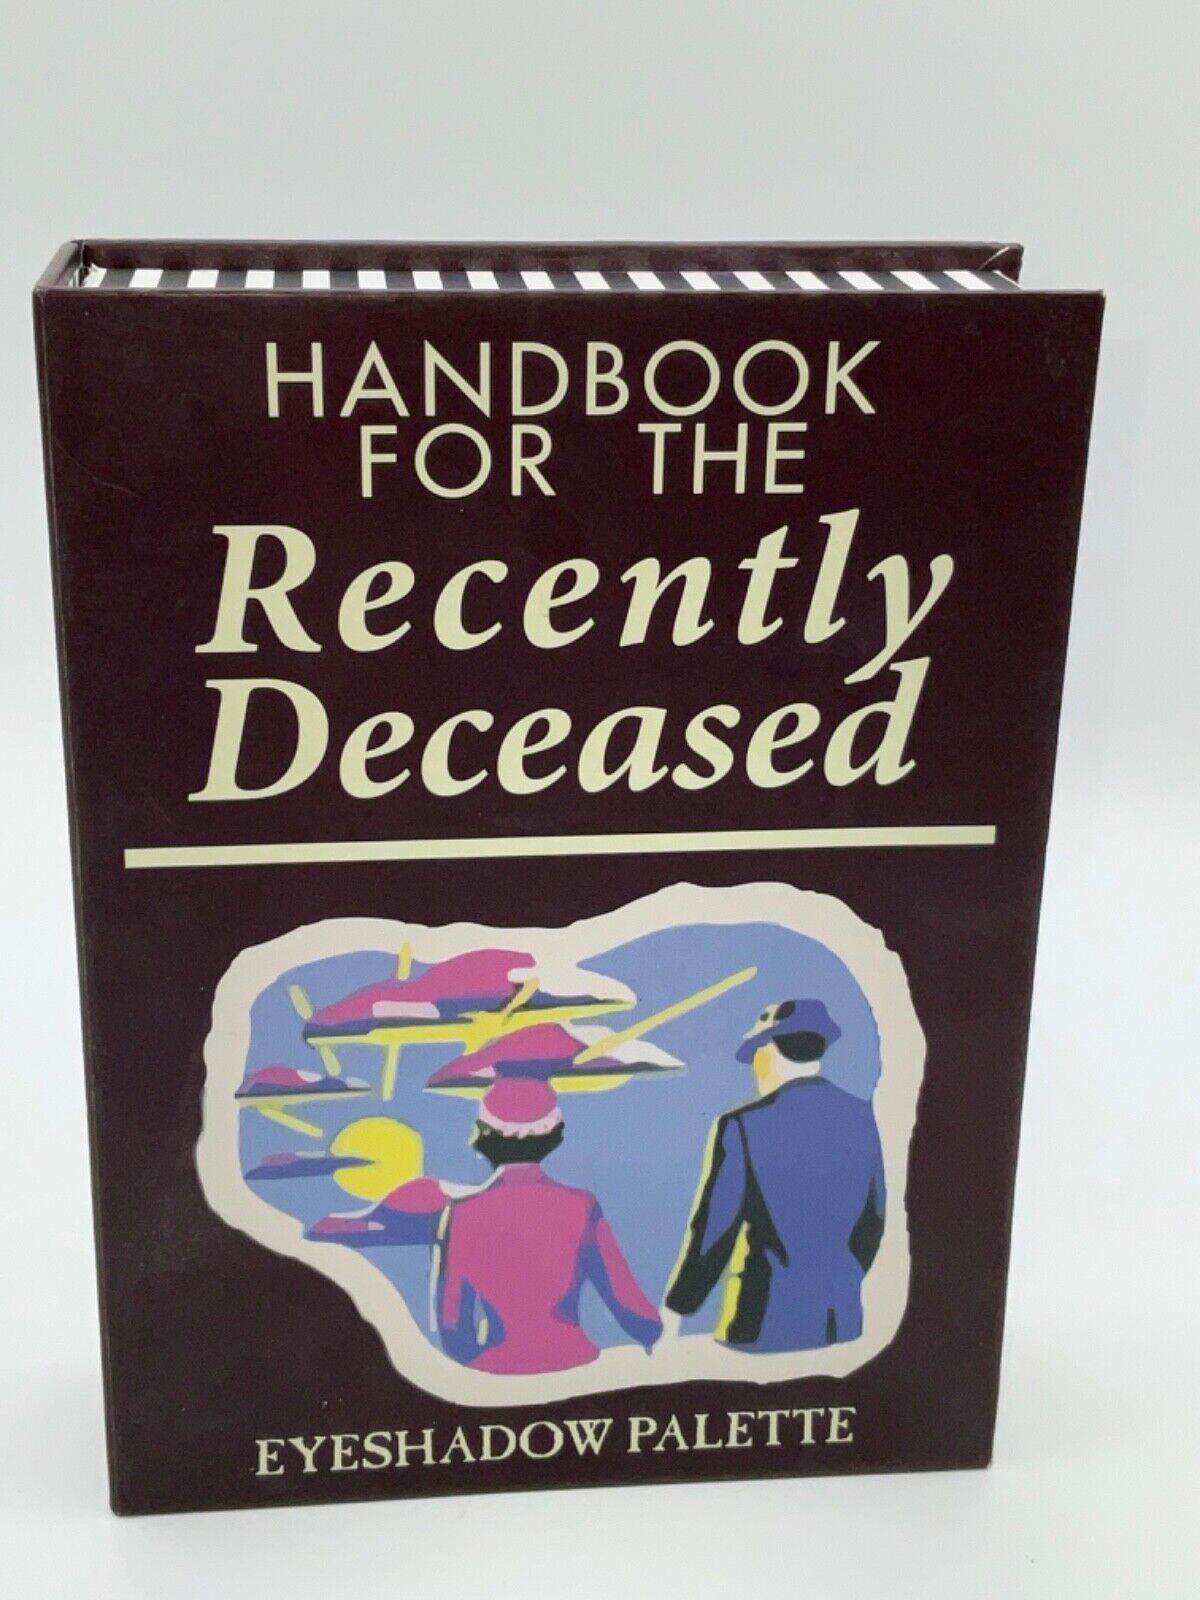 *RARE* Beetlejuice Eyeshadow Palette Handbook for the Recently Deceased See Desc